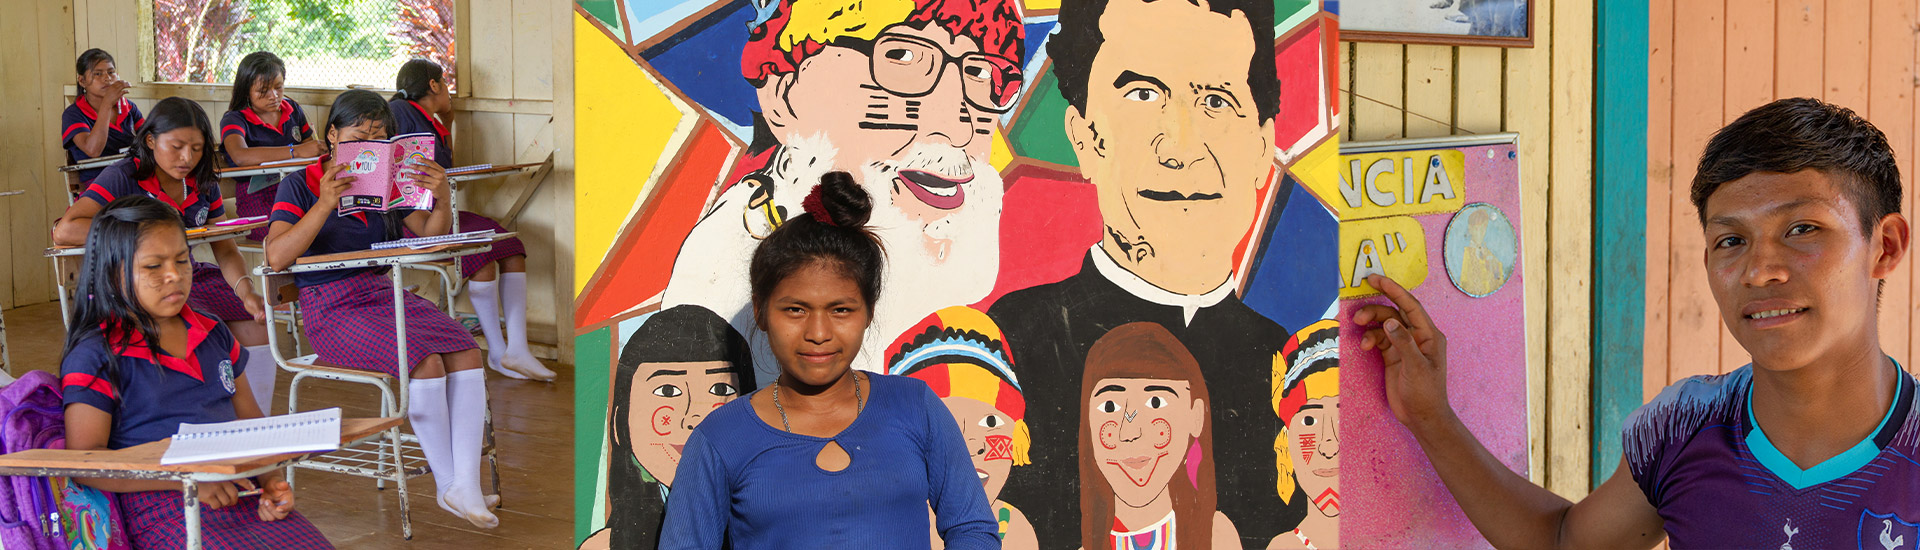 Gabriel y María, jóvenes achuar en la misión de Wasakentsa (Ecuador) comprometidos con su cultura